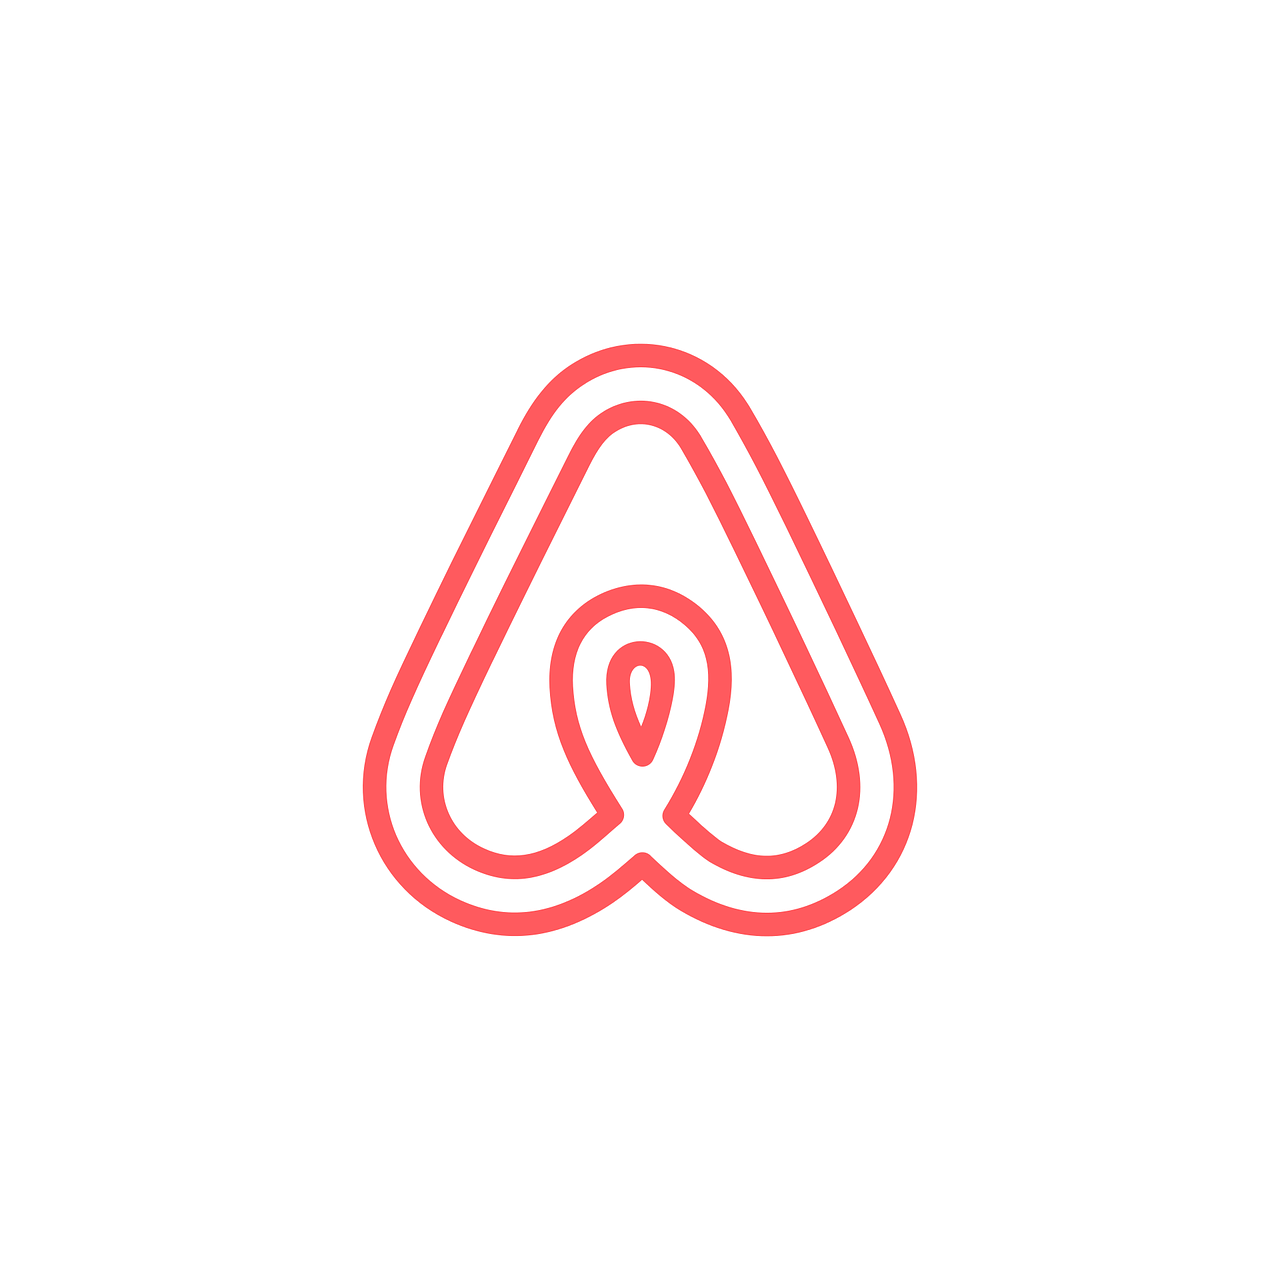 Airbnb,  Airbnb Piktogramą,  Airbnb Logotipas,  Airbnb Simbolis,  Socialiniai Tinklai,  Tinklai,  Internetas,  Tinklas,  Socialinė,  Socialinis Tinklas